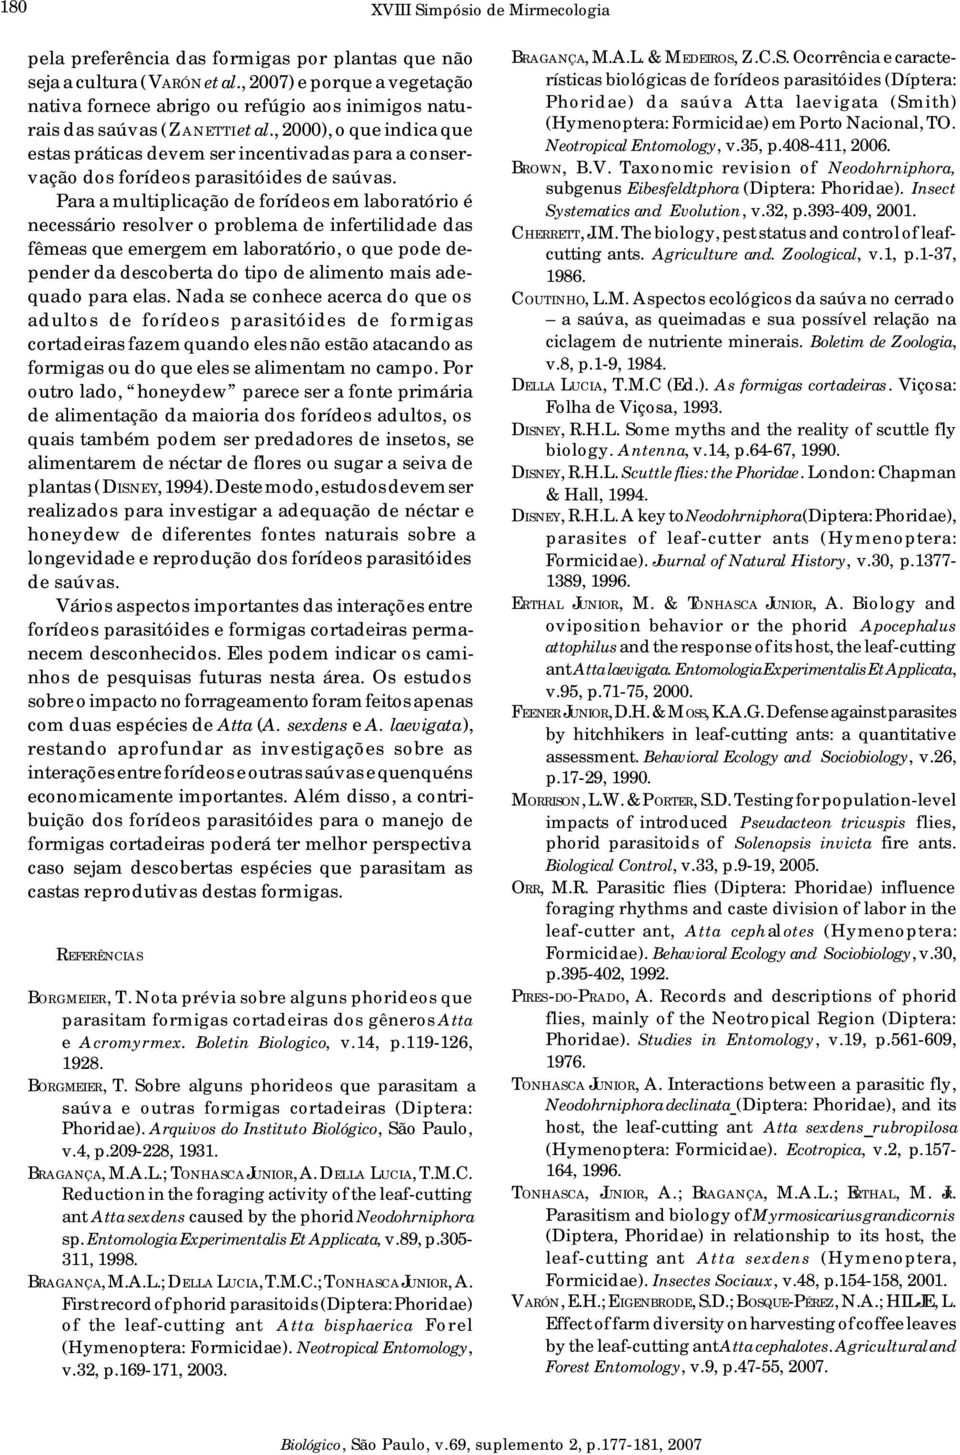 , 2000), o que indica que estas práticas devem ser incentivadas para a conservação dos forídeos parasitóides de saúvas.